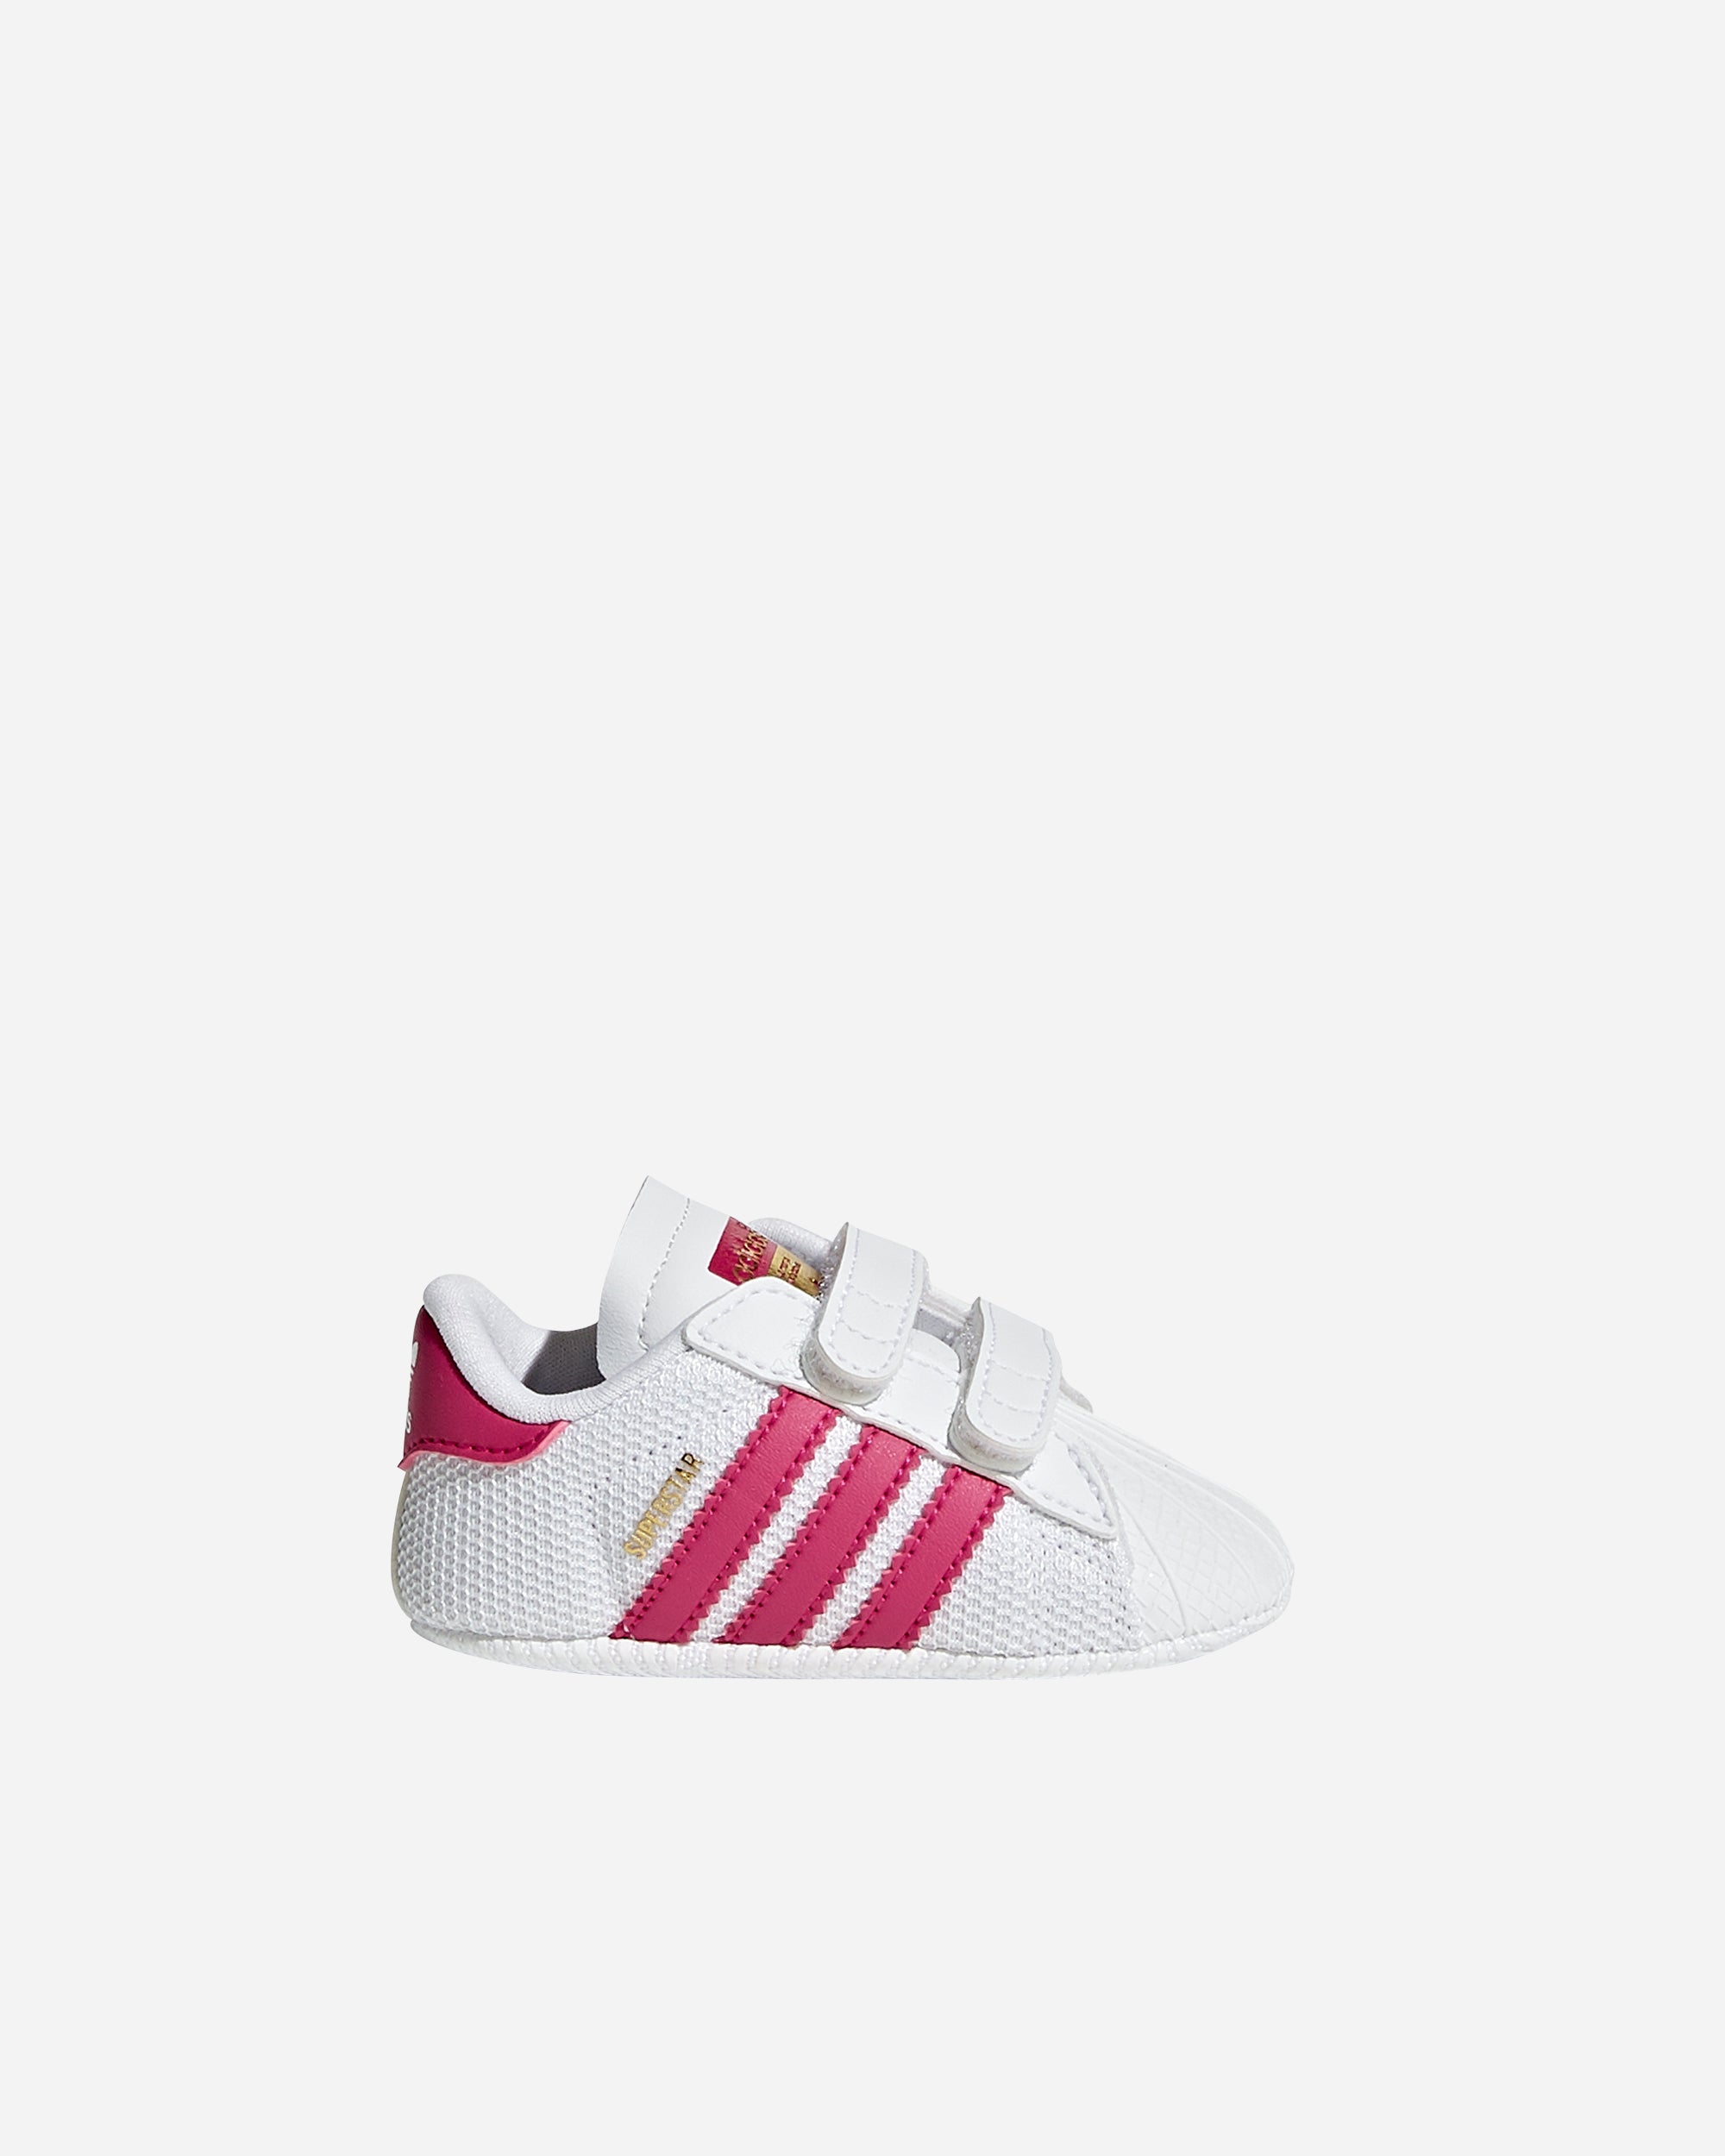 adidas Originals Superstar (Baby) White/Pink S79917